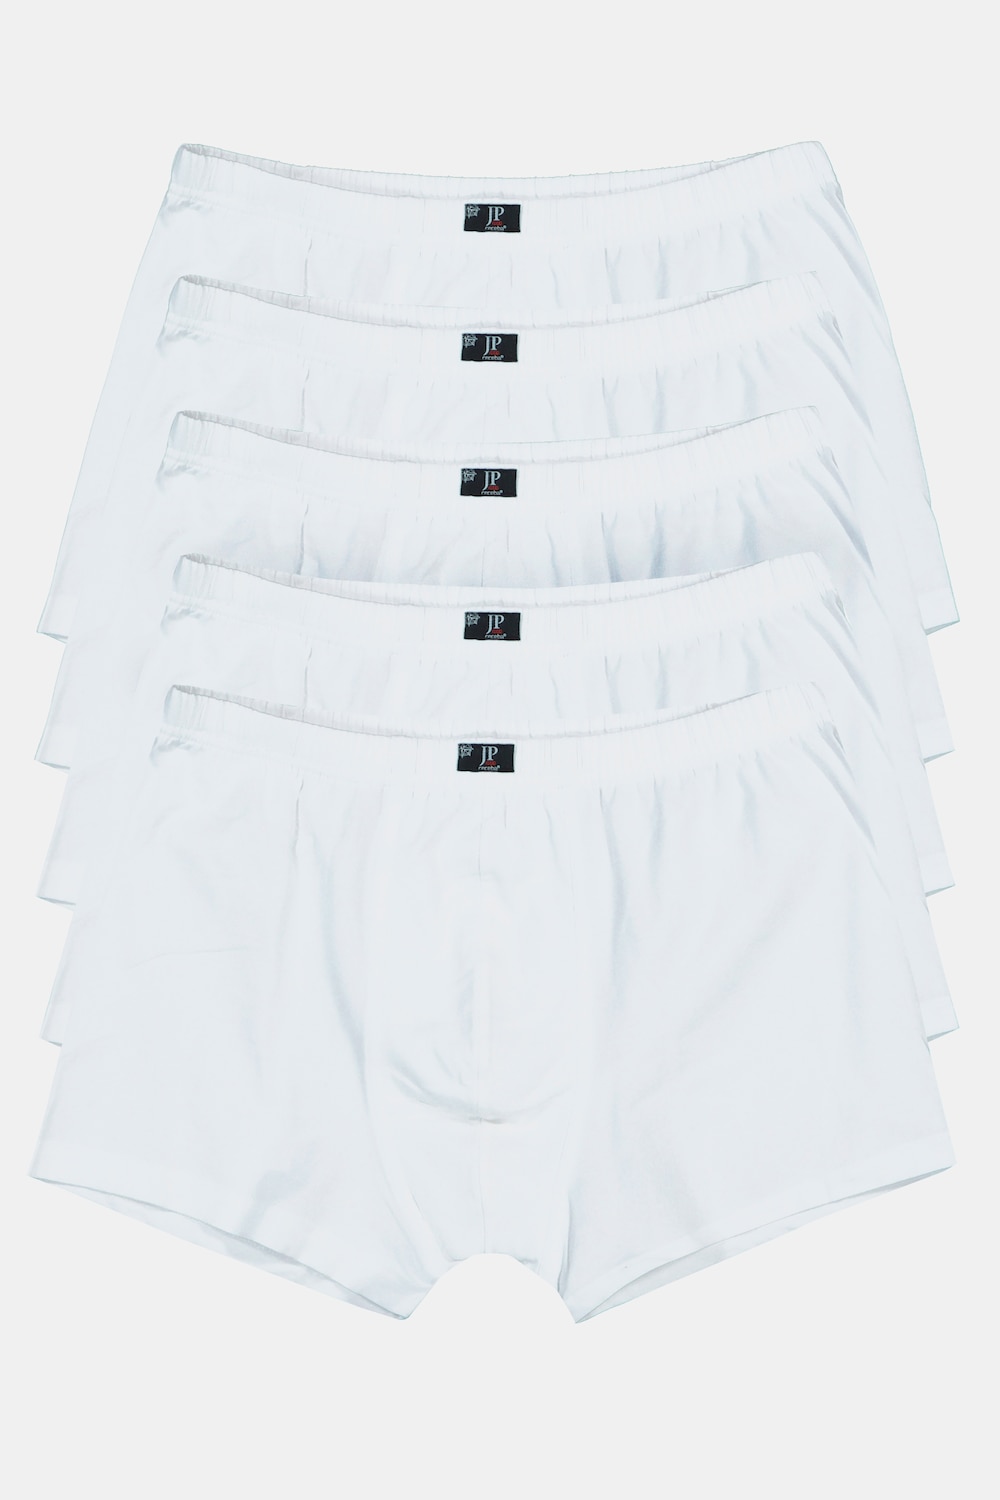 Grote Maten pants, Heren, wit, Maat: 3XL, Katoen, JP1880